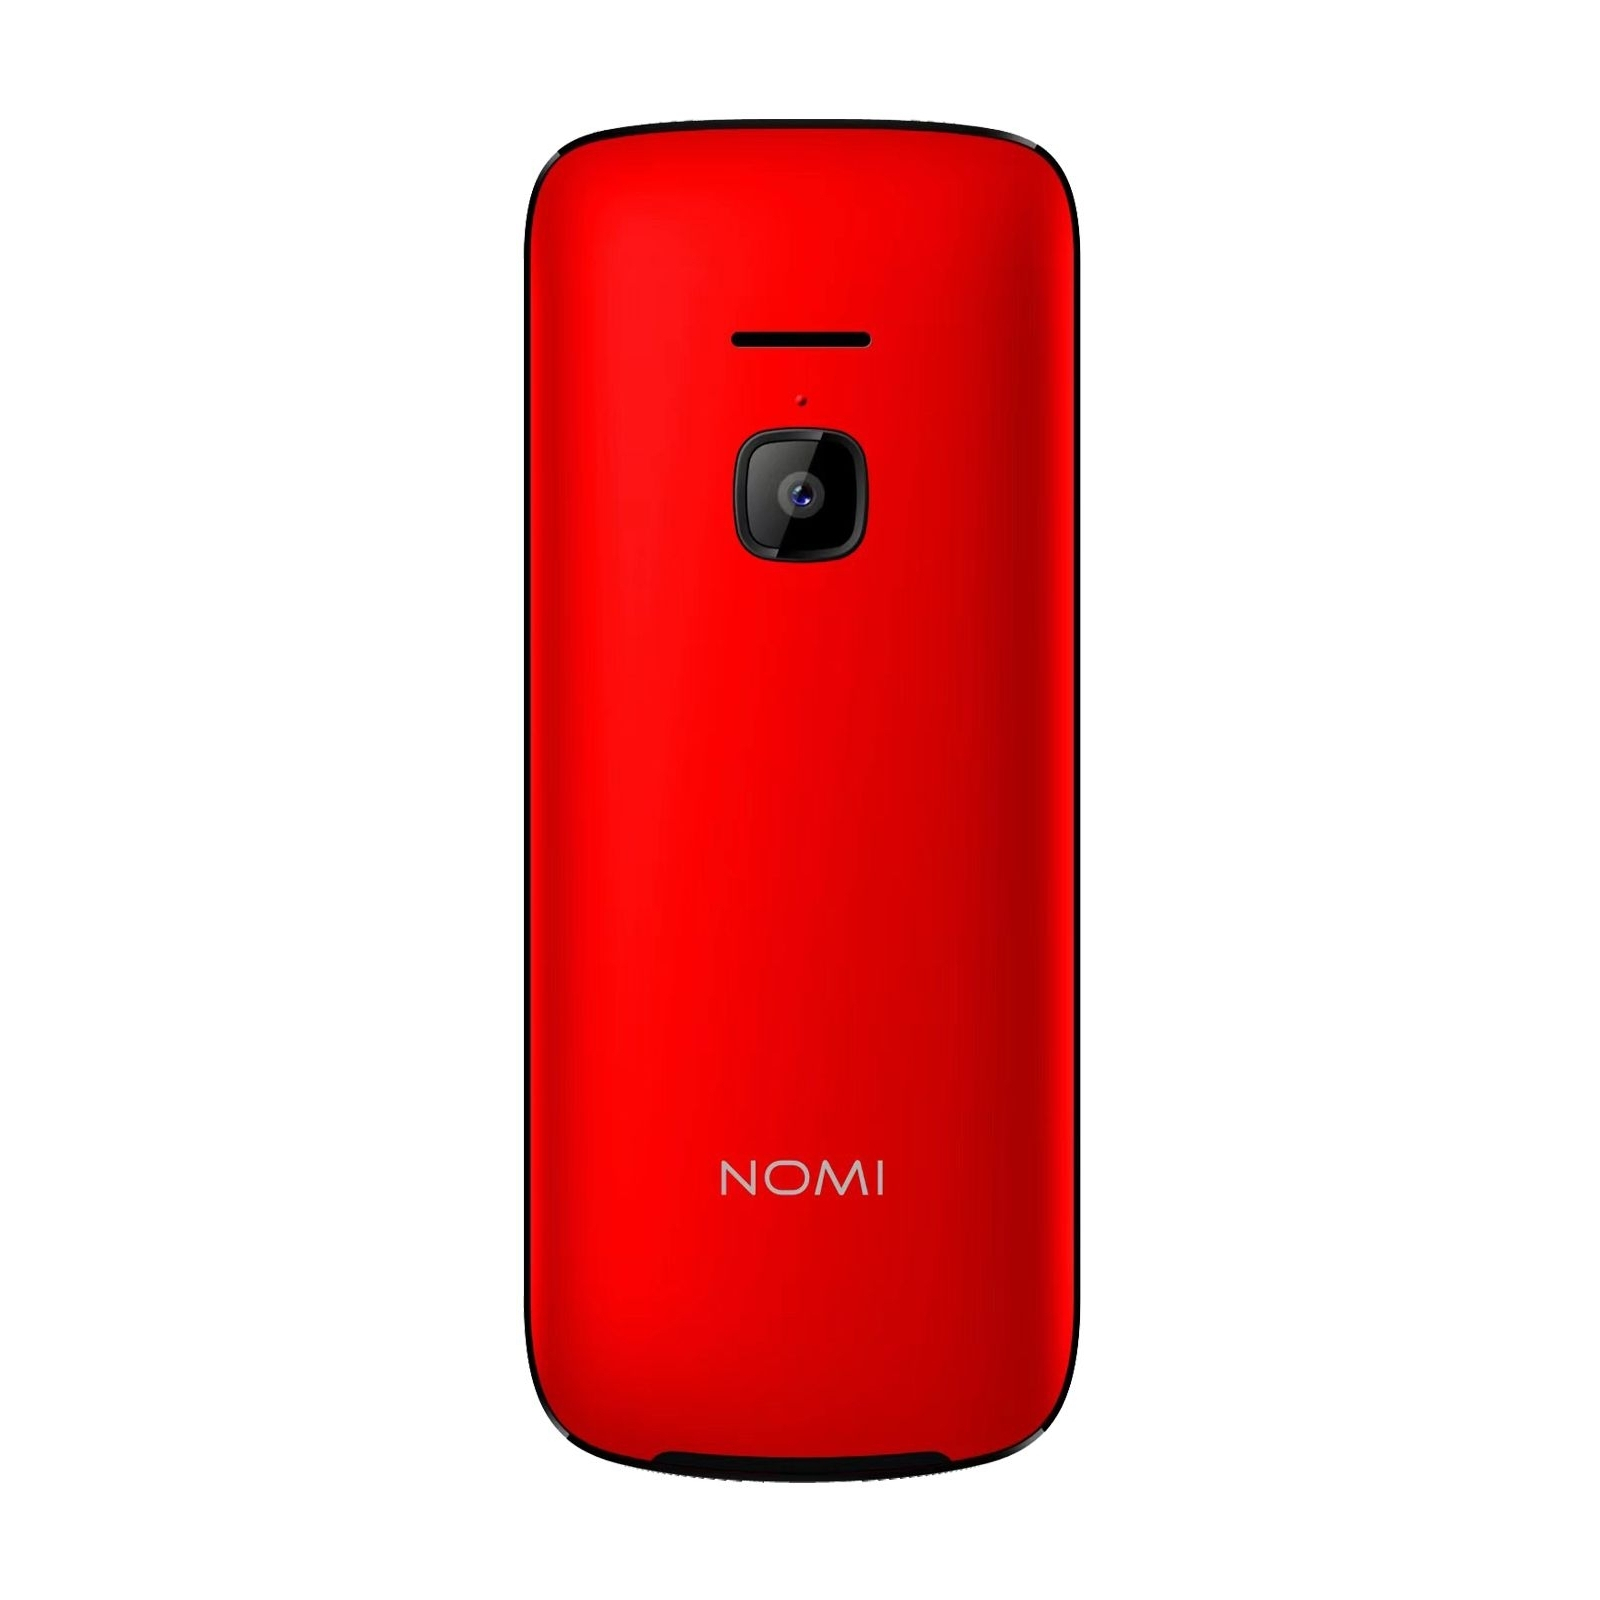 Мобільний телефон Nomi i2403 Black зображення 2